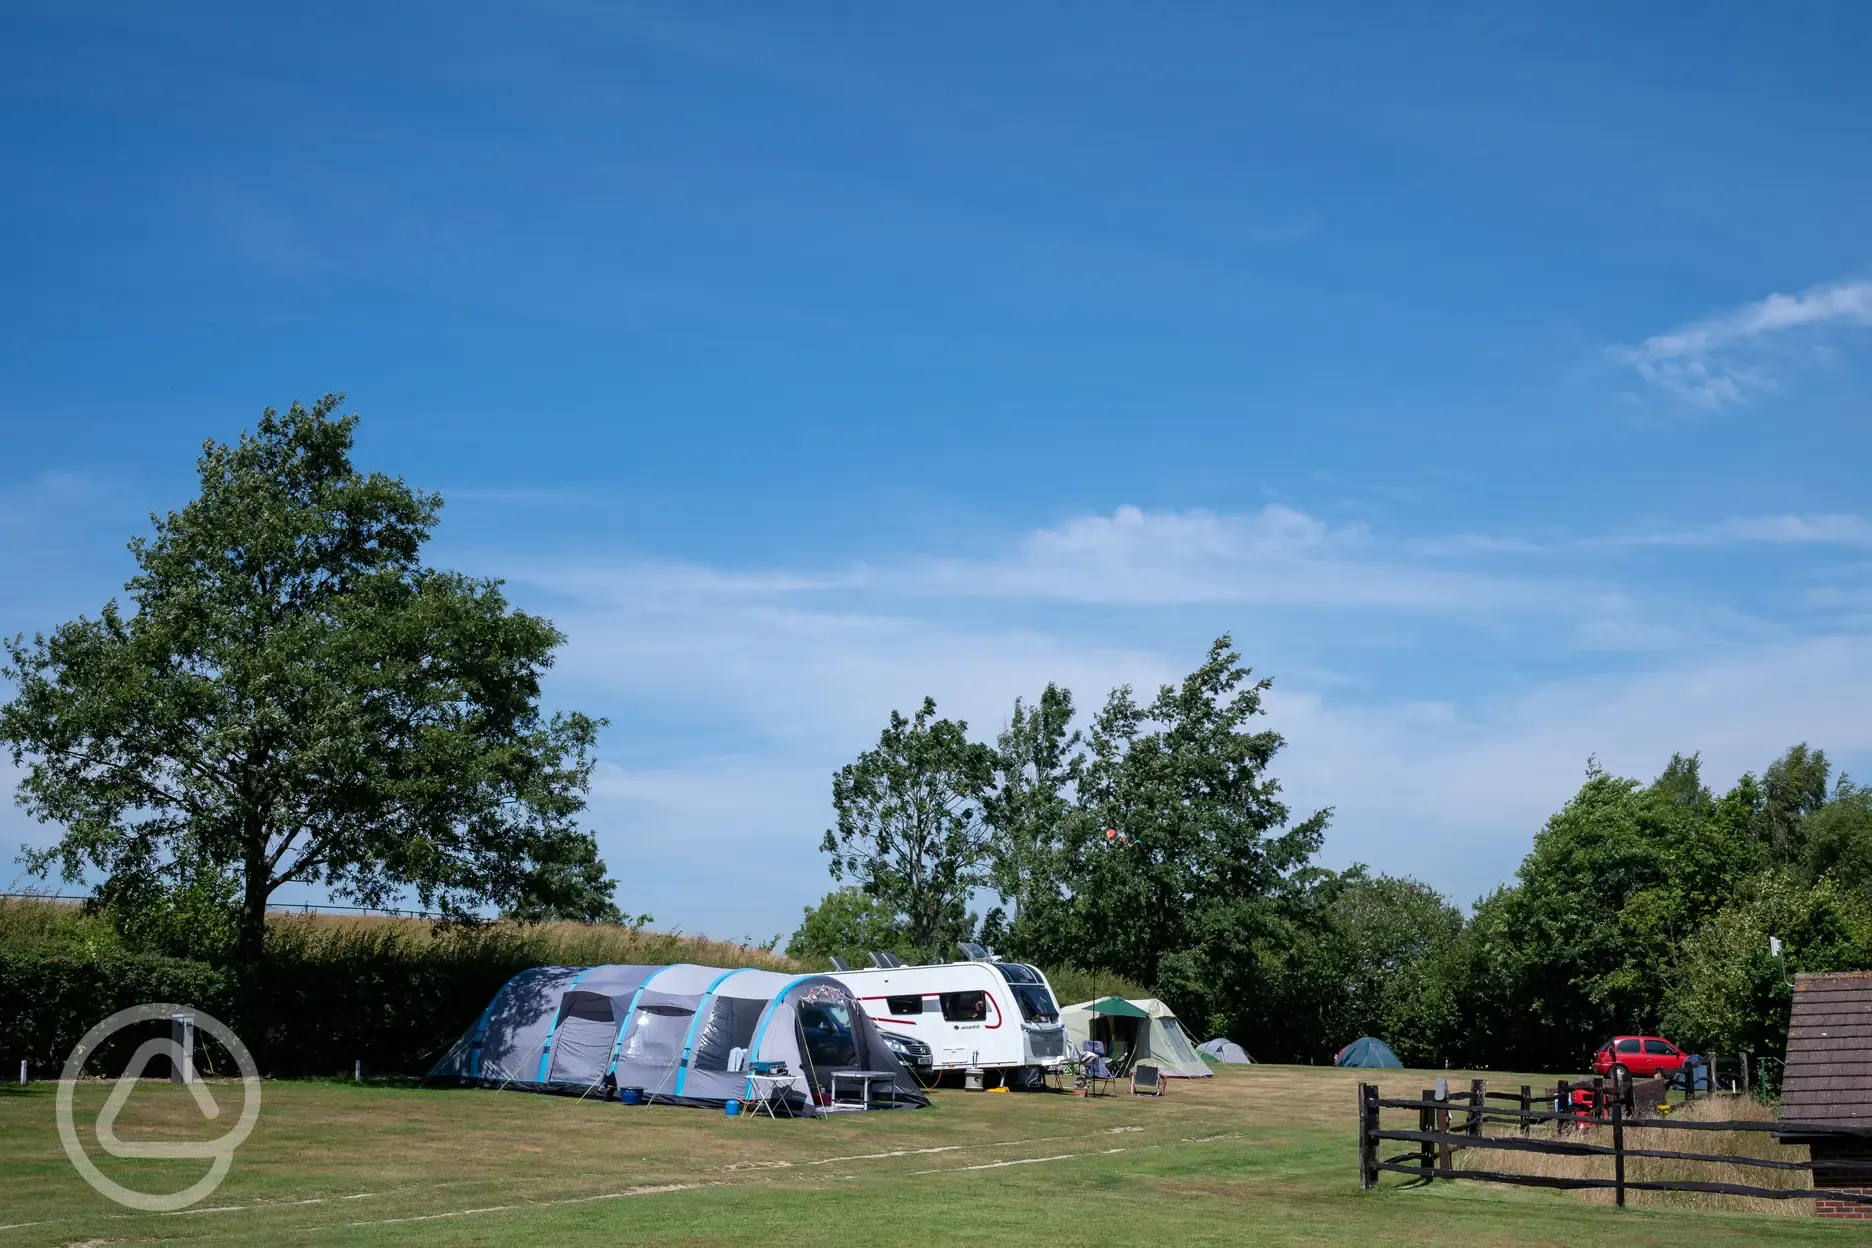 Camping at Crowborough